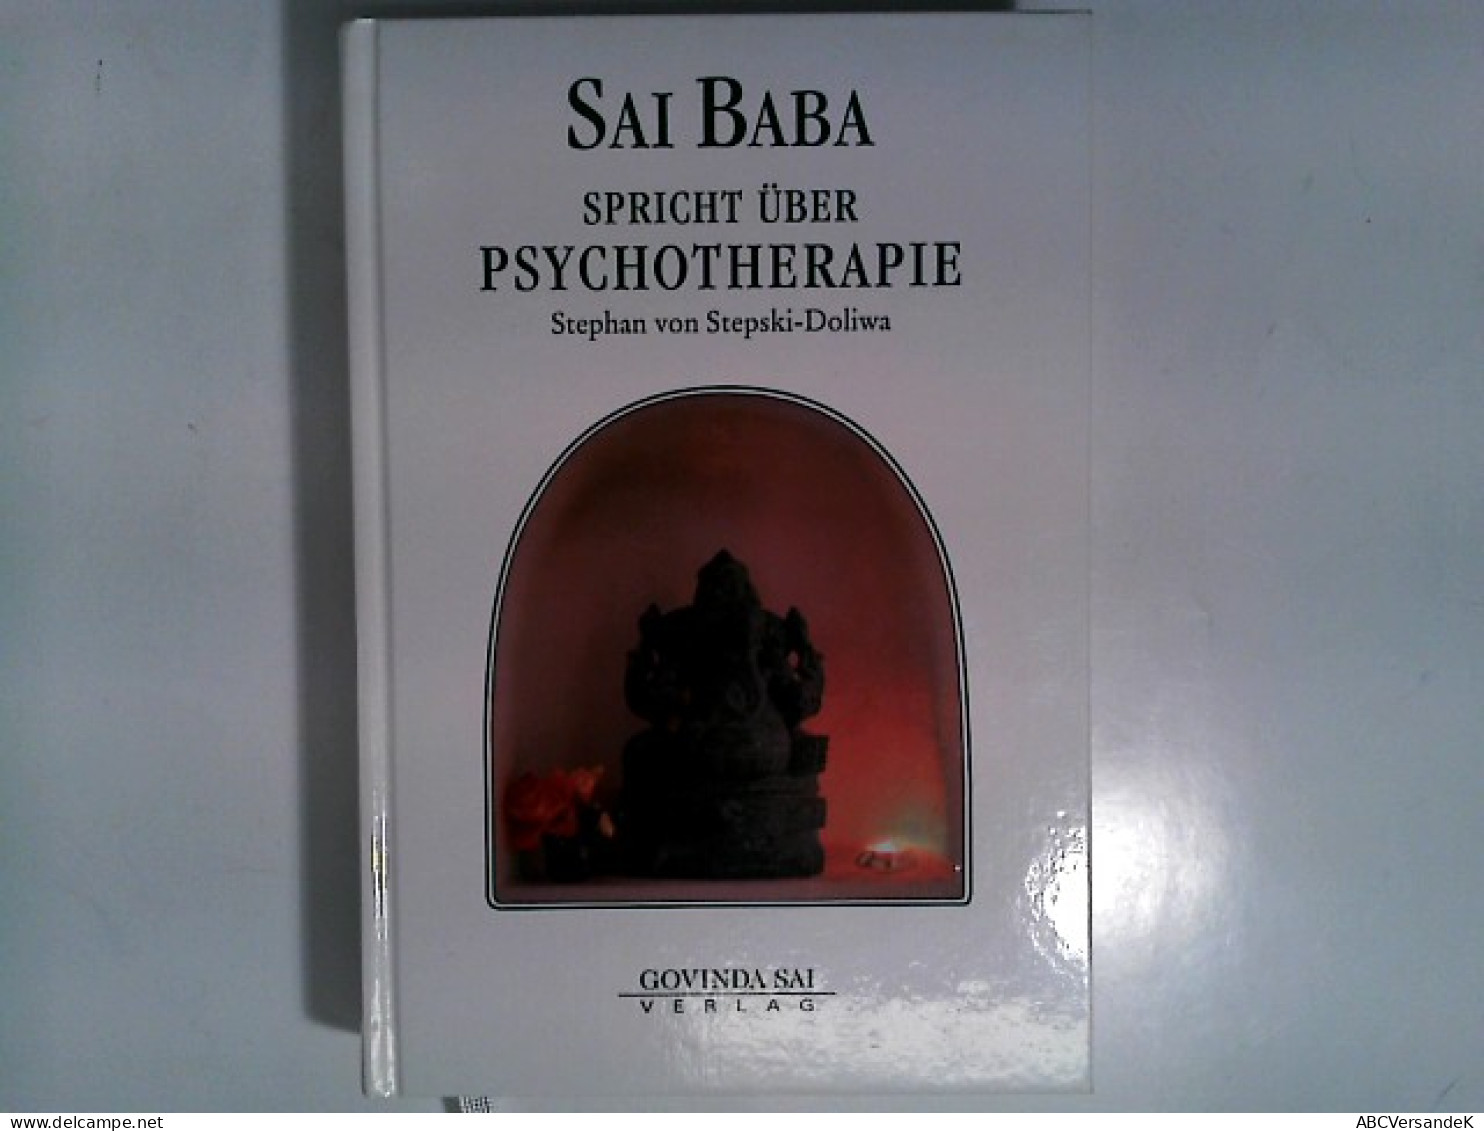 Sai Baba Spricht über Psychotherapie - Gezondheid & Medicijnen